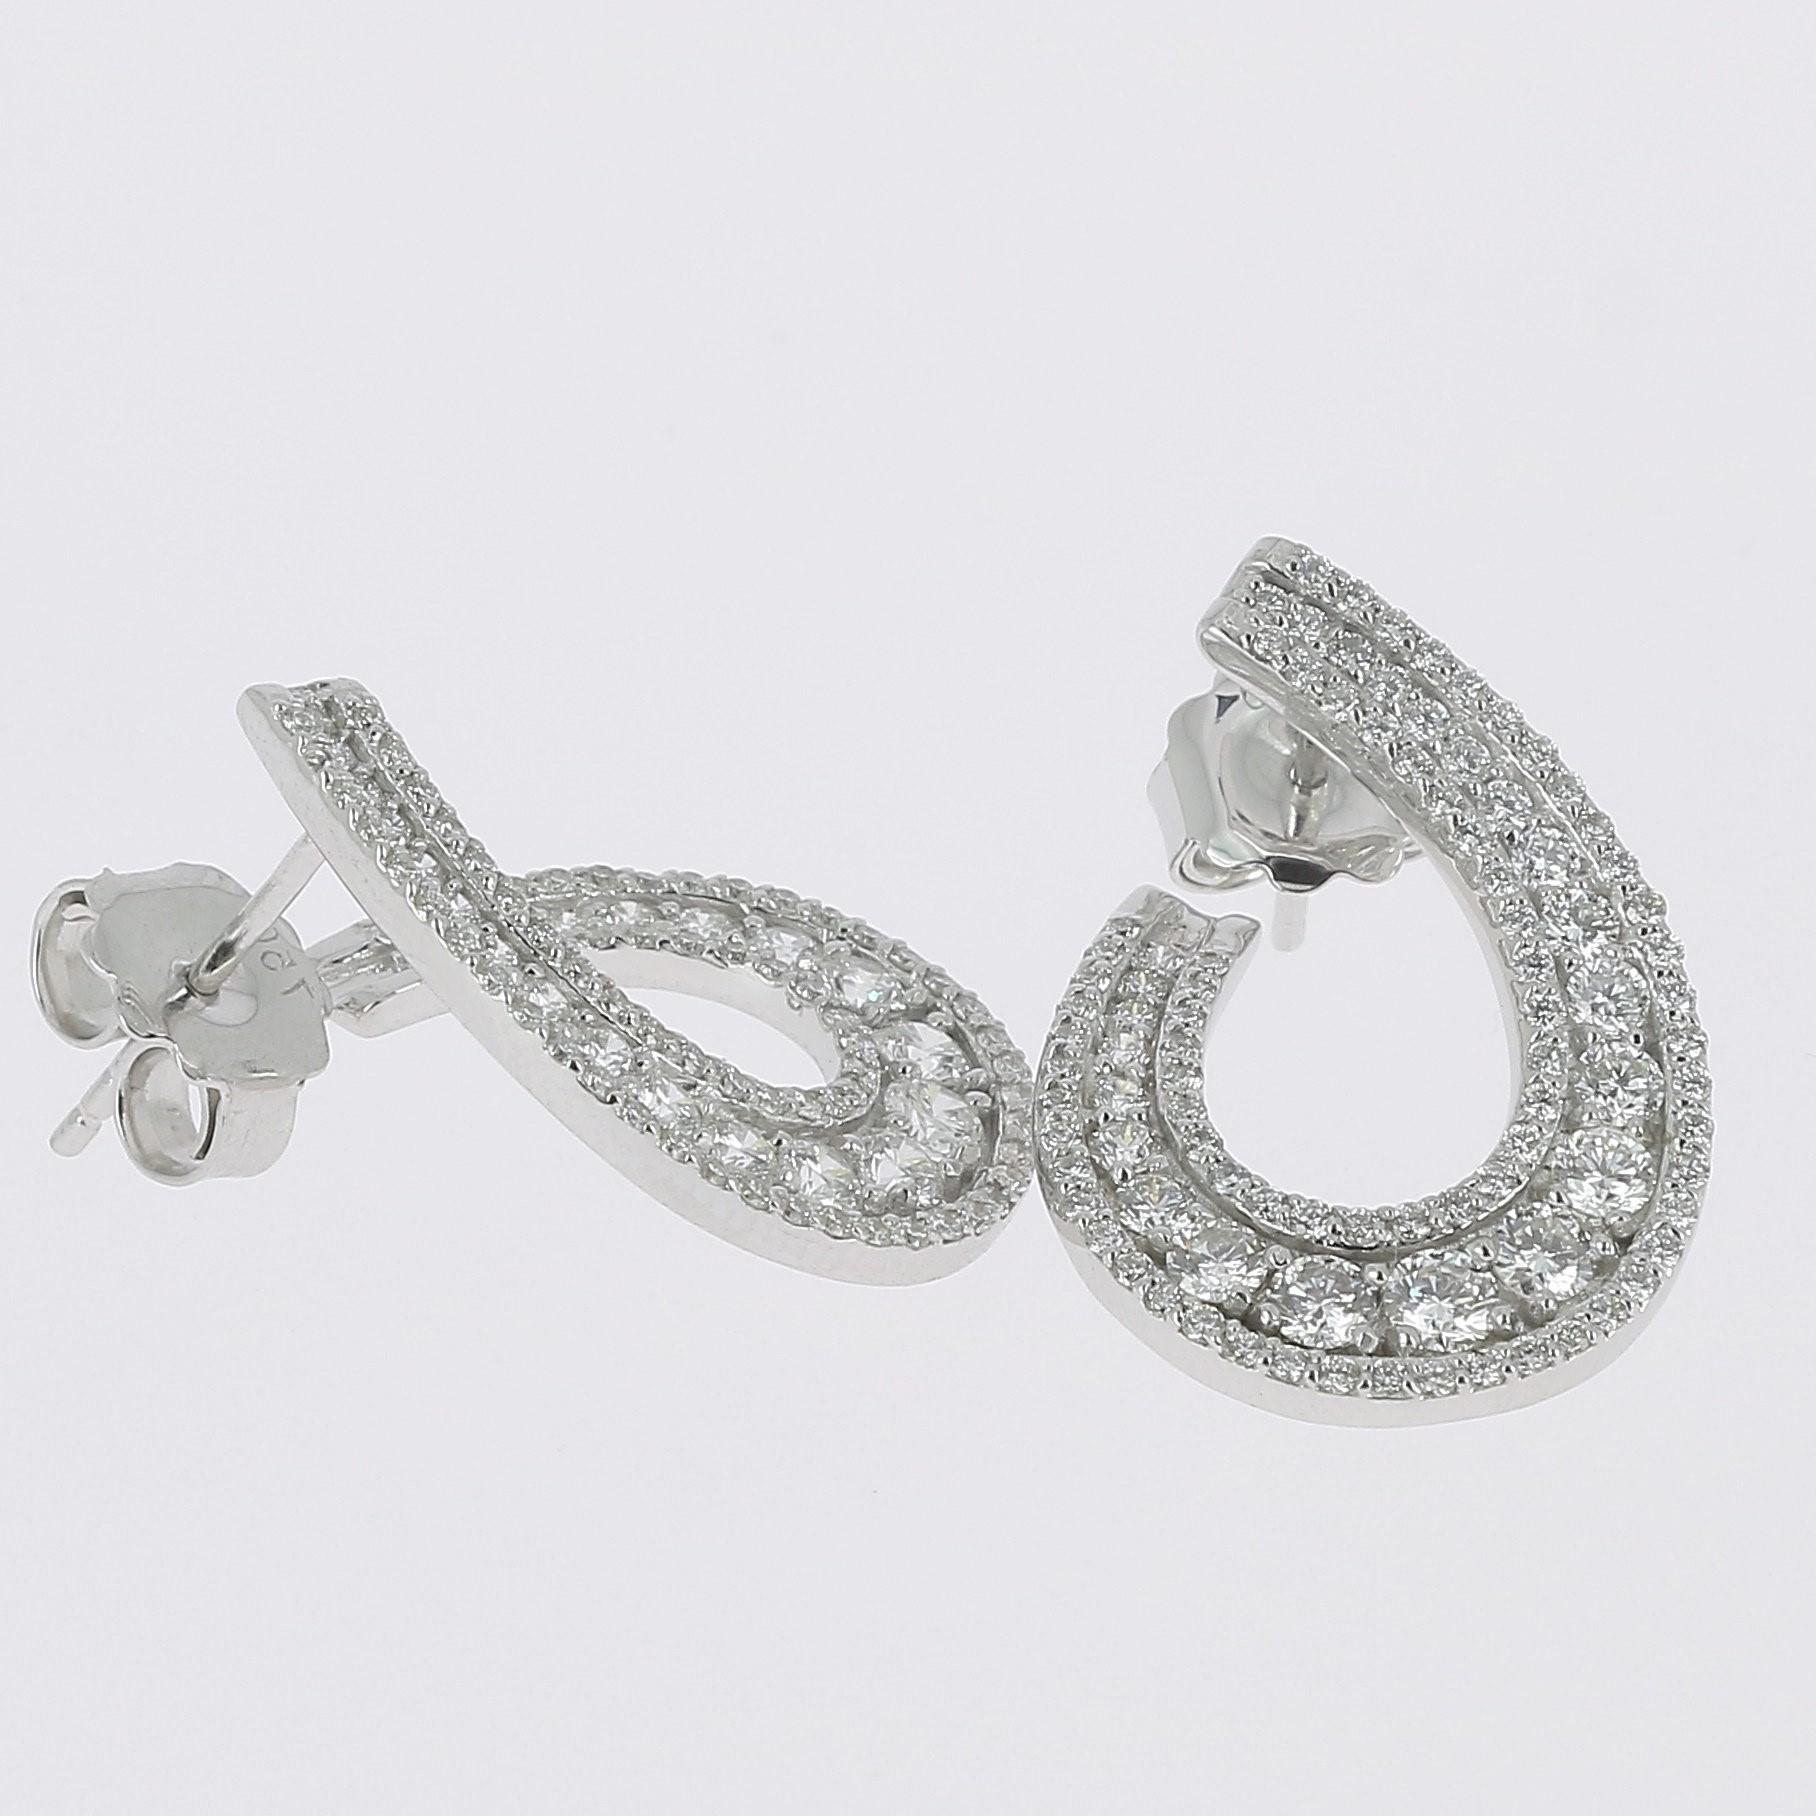 Oval Cut  1.97 carats GVS Round Diamonds Swirl Earring 18K White Gold Stud Earrings